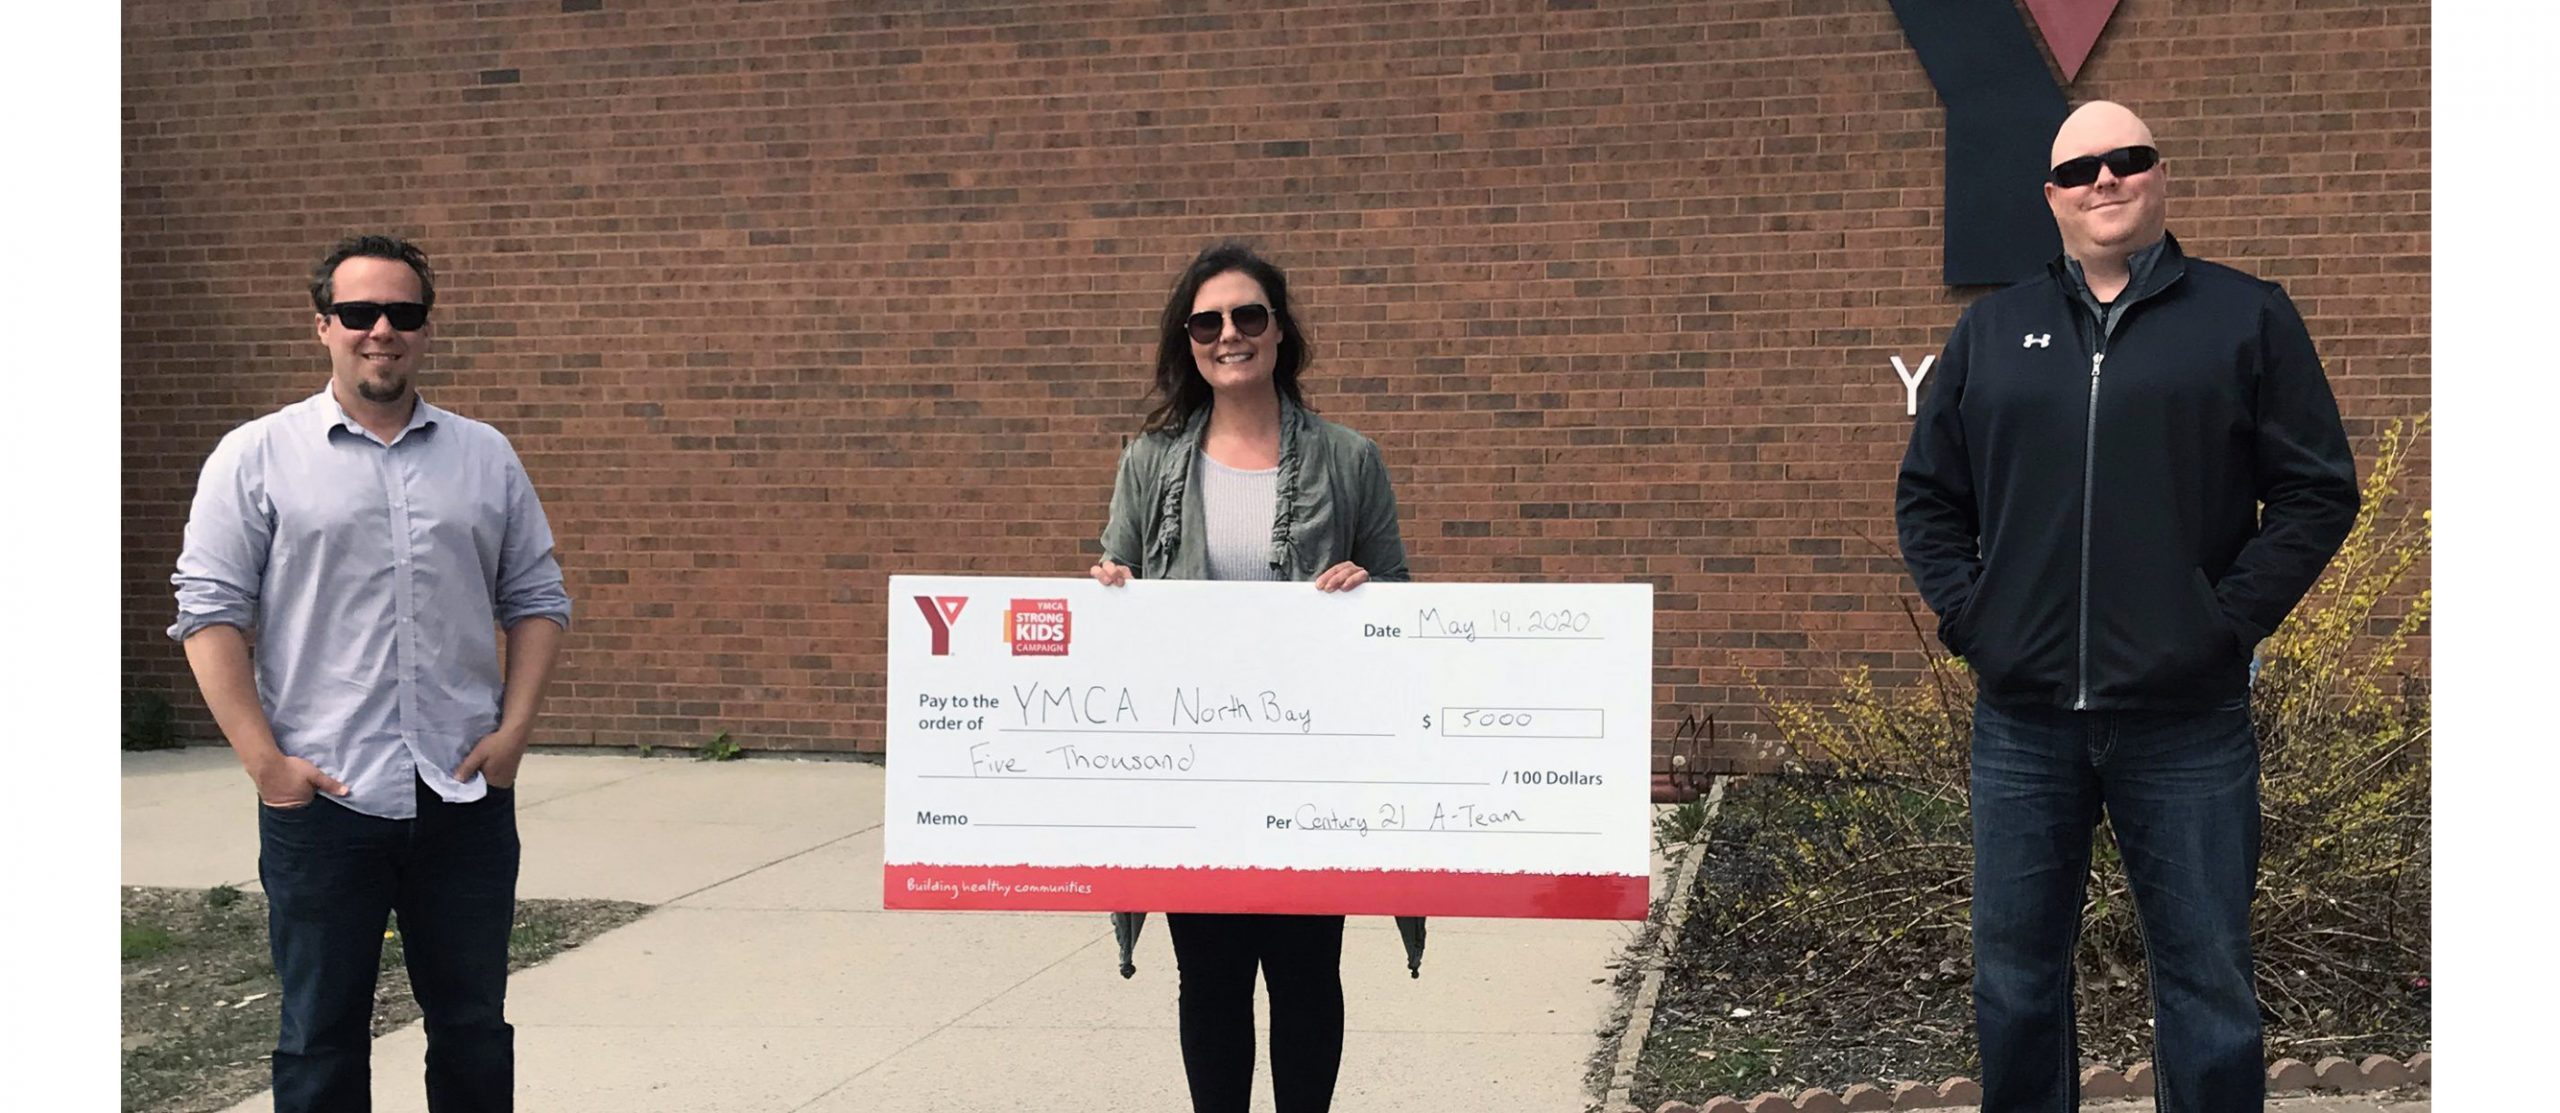 A Team donates to YMCA